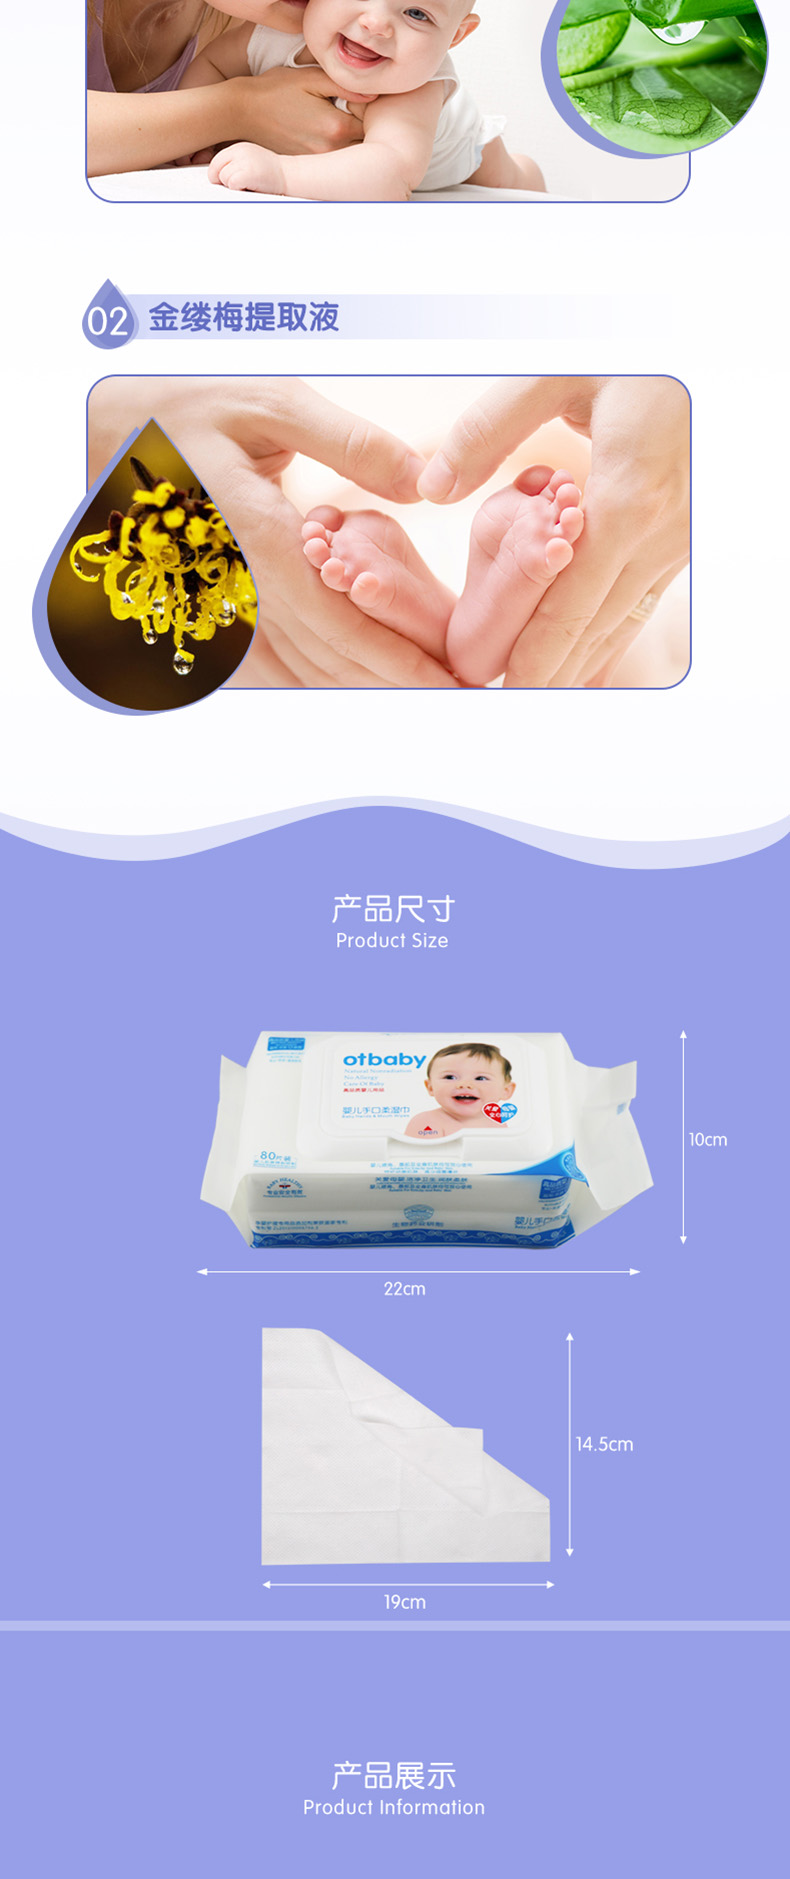 otbaby 婴儿手口柔湿巾 80片 YA65